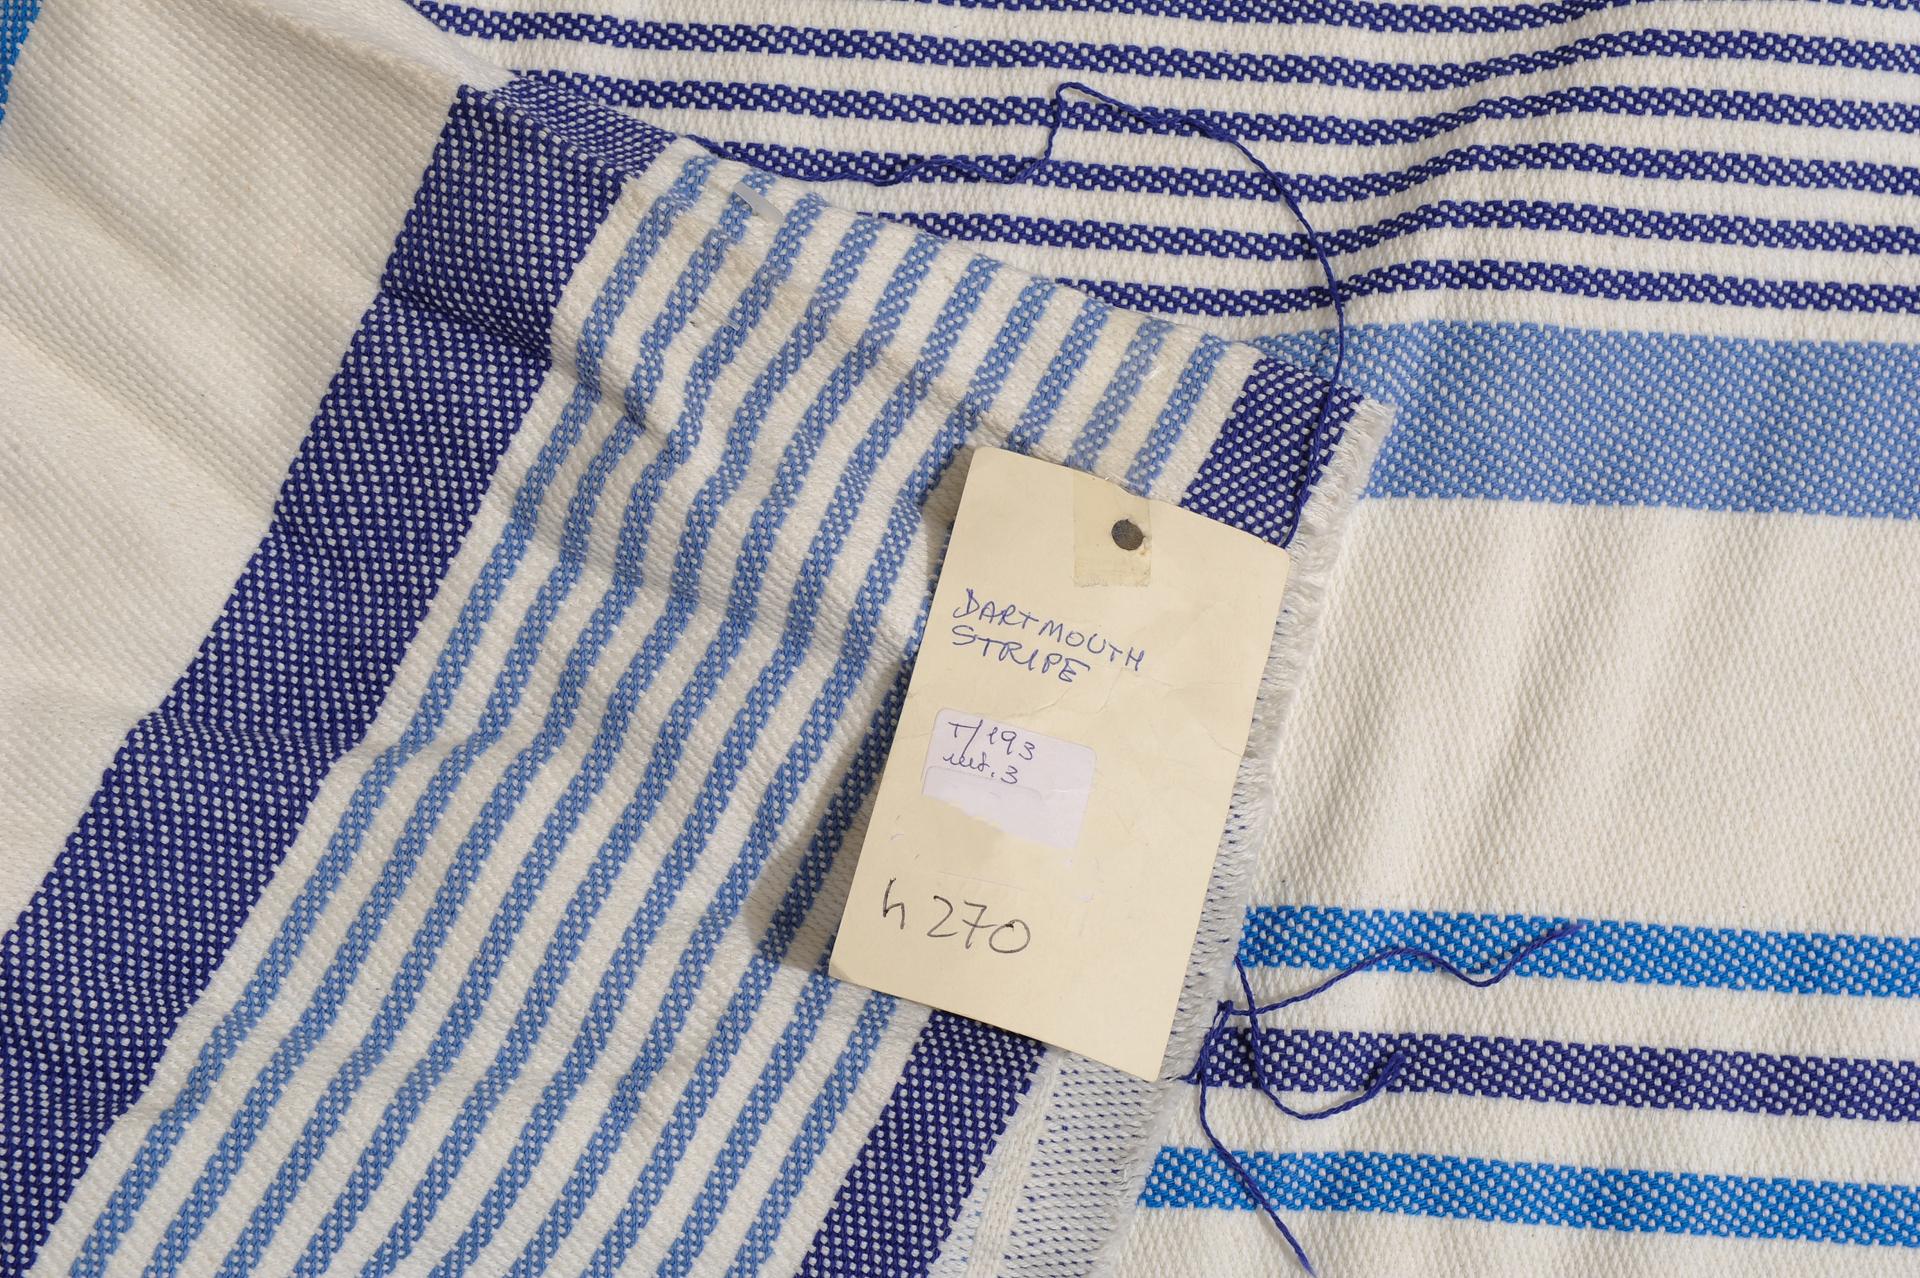 Ein marineblau gestreifter, breiter Stoff, ideal für das Bett oder für Vorhänge, von der besten Marke: Mulberry.
Sie können machen, was Sie wollen.